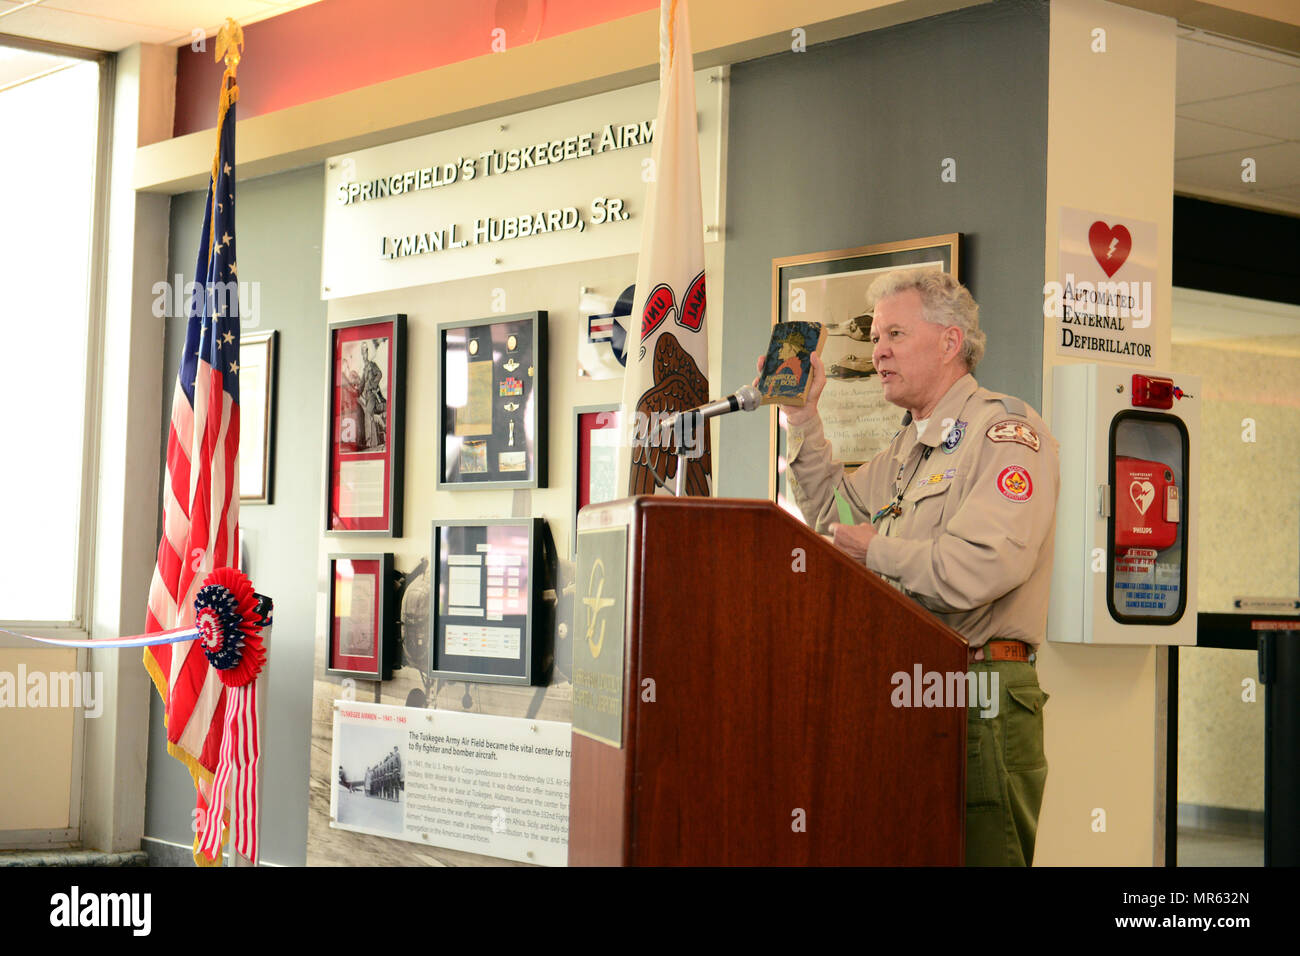 M. Dan O'Brien, directeur exécutif, Conseil d'Abraham Lincoln, les Boy Scouts of America, présente certaines des différences dans ce qu'il fallait pour être un aigle Scout dans les années 40 par rapport aux normes d'aujourd'Scoout Eagle. Parmi ses autres grandes réalisations, Lyman L. Hubbard Sr. était aussi un Eagle Scout. Banque D'Images